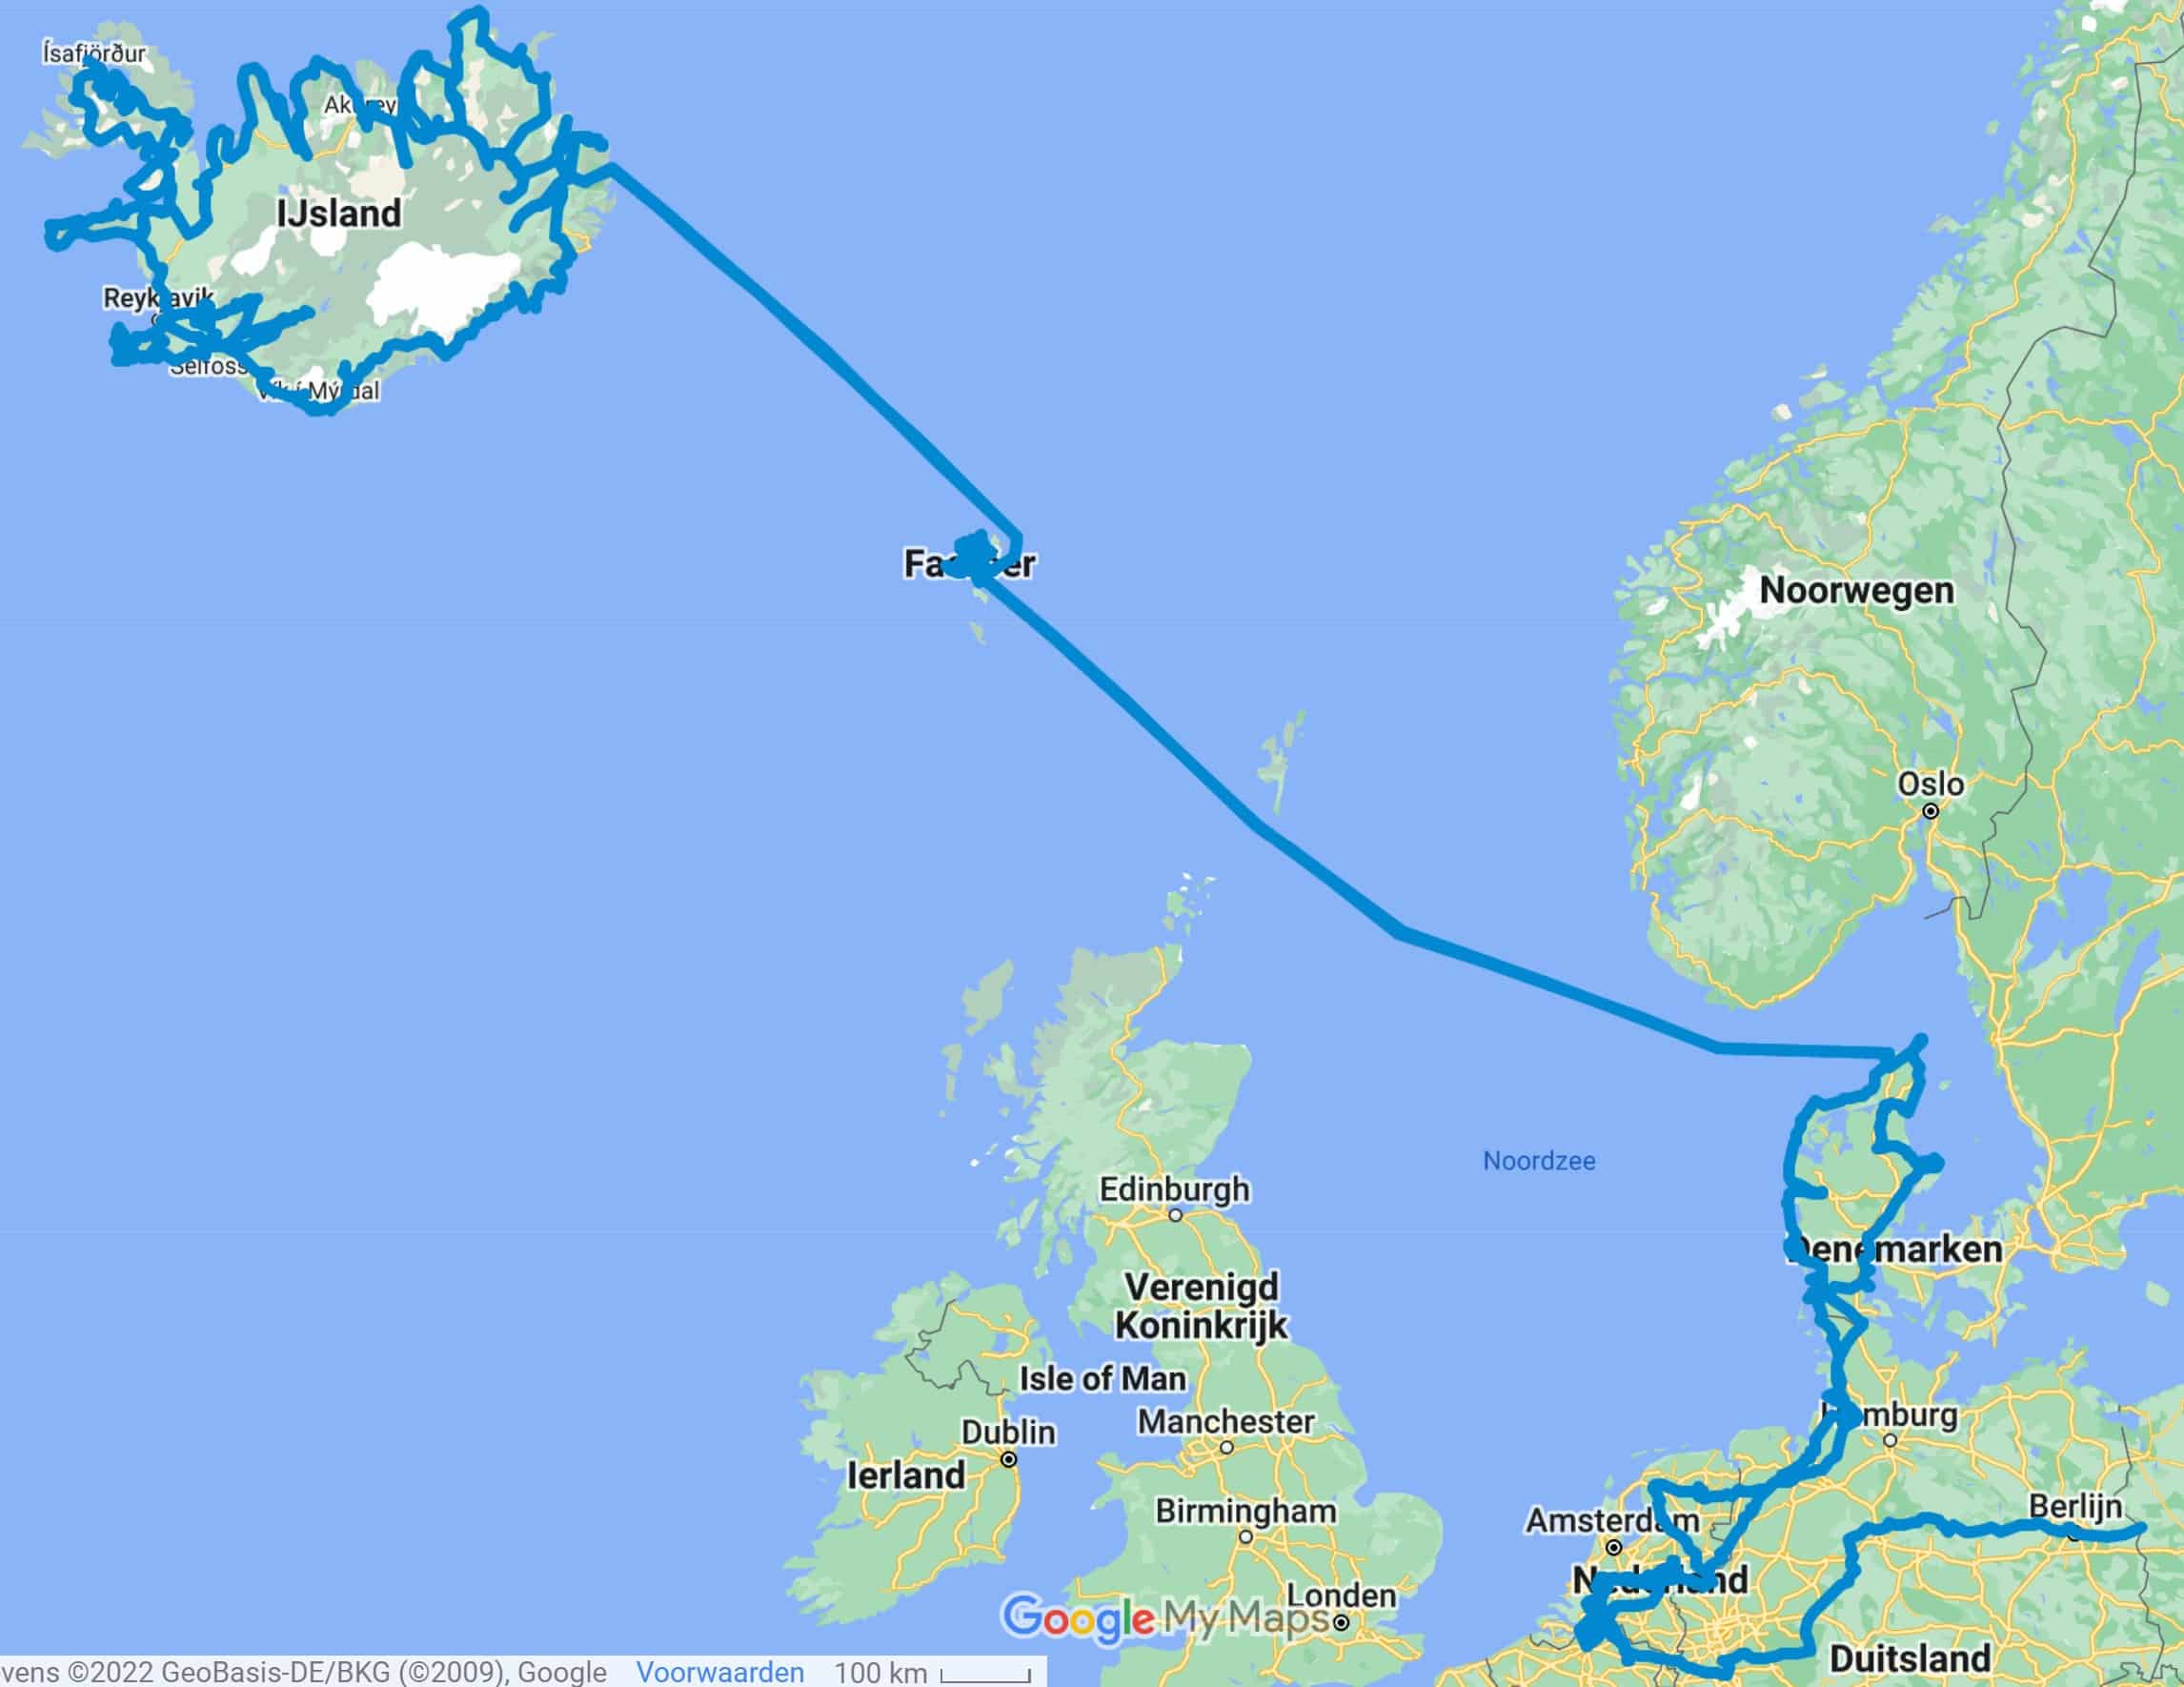 الرحلة من وإلى أيسلندا وجزر فارو | أيسلندا وجزر فارو في الشتاء